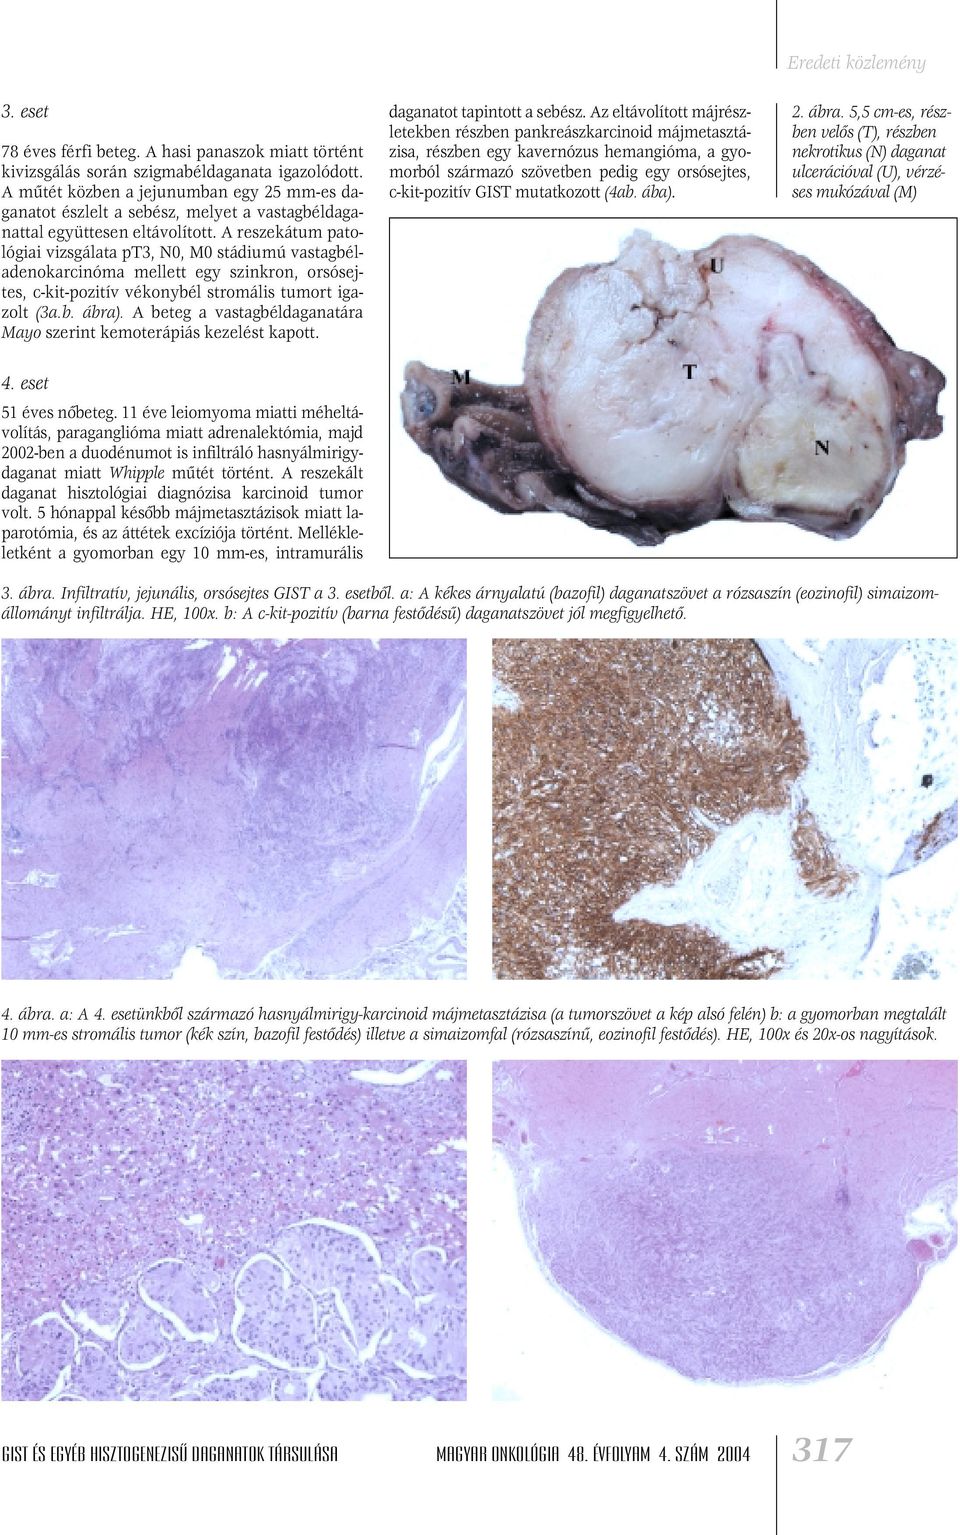 A reszekátum patológiai vizsgálata pt3, N0, M0 stádiumú vastagbéladenokarcinóma mellett egy szinkron, orsósejtes, c-kit-pozitív vékonybél stromális tumort igazolt (3a.b. ábra).